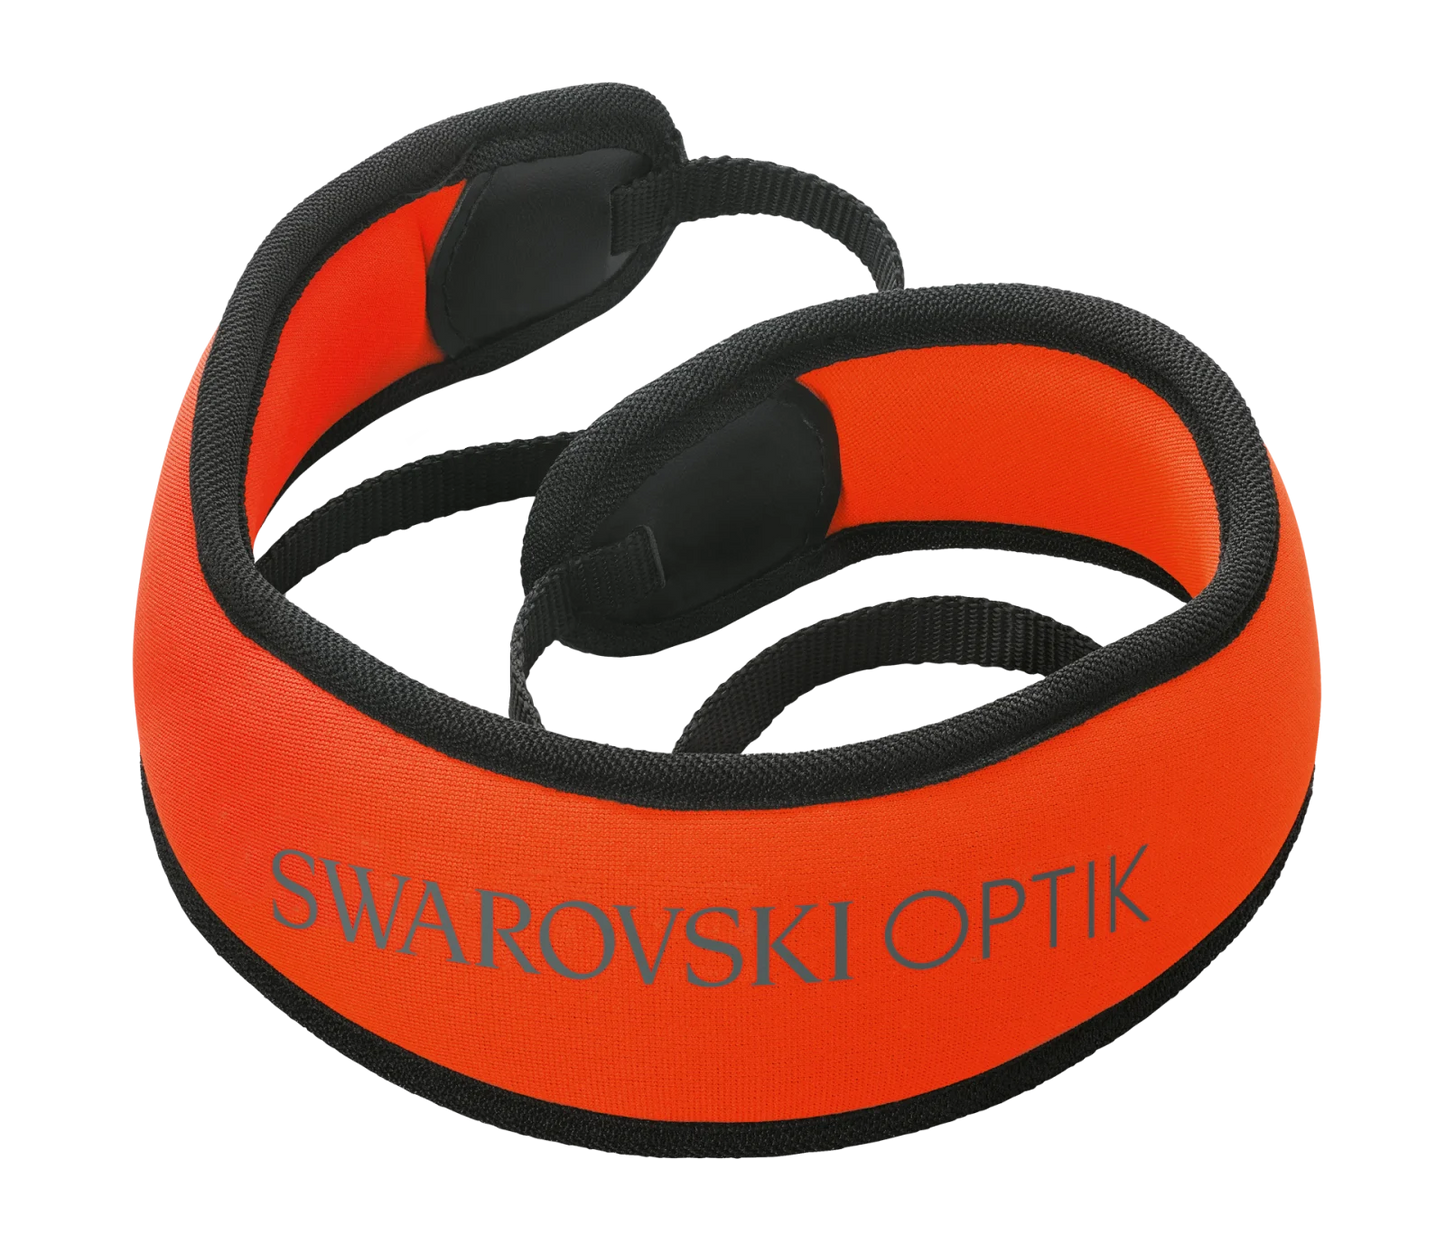 SWAROVSKI OPTIK FSSP floating shoulder strap pro - EDISLA